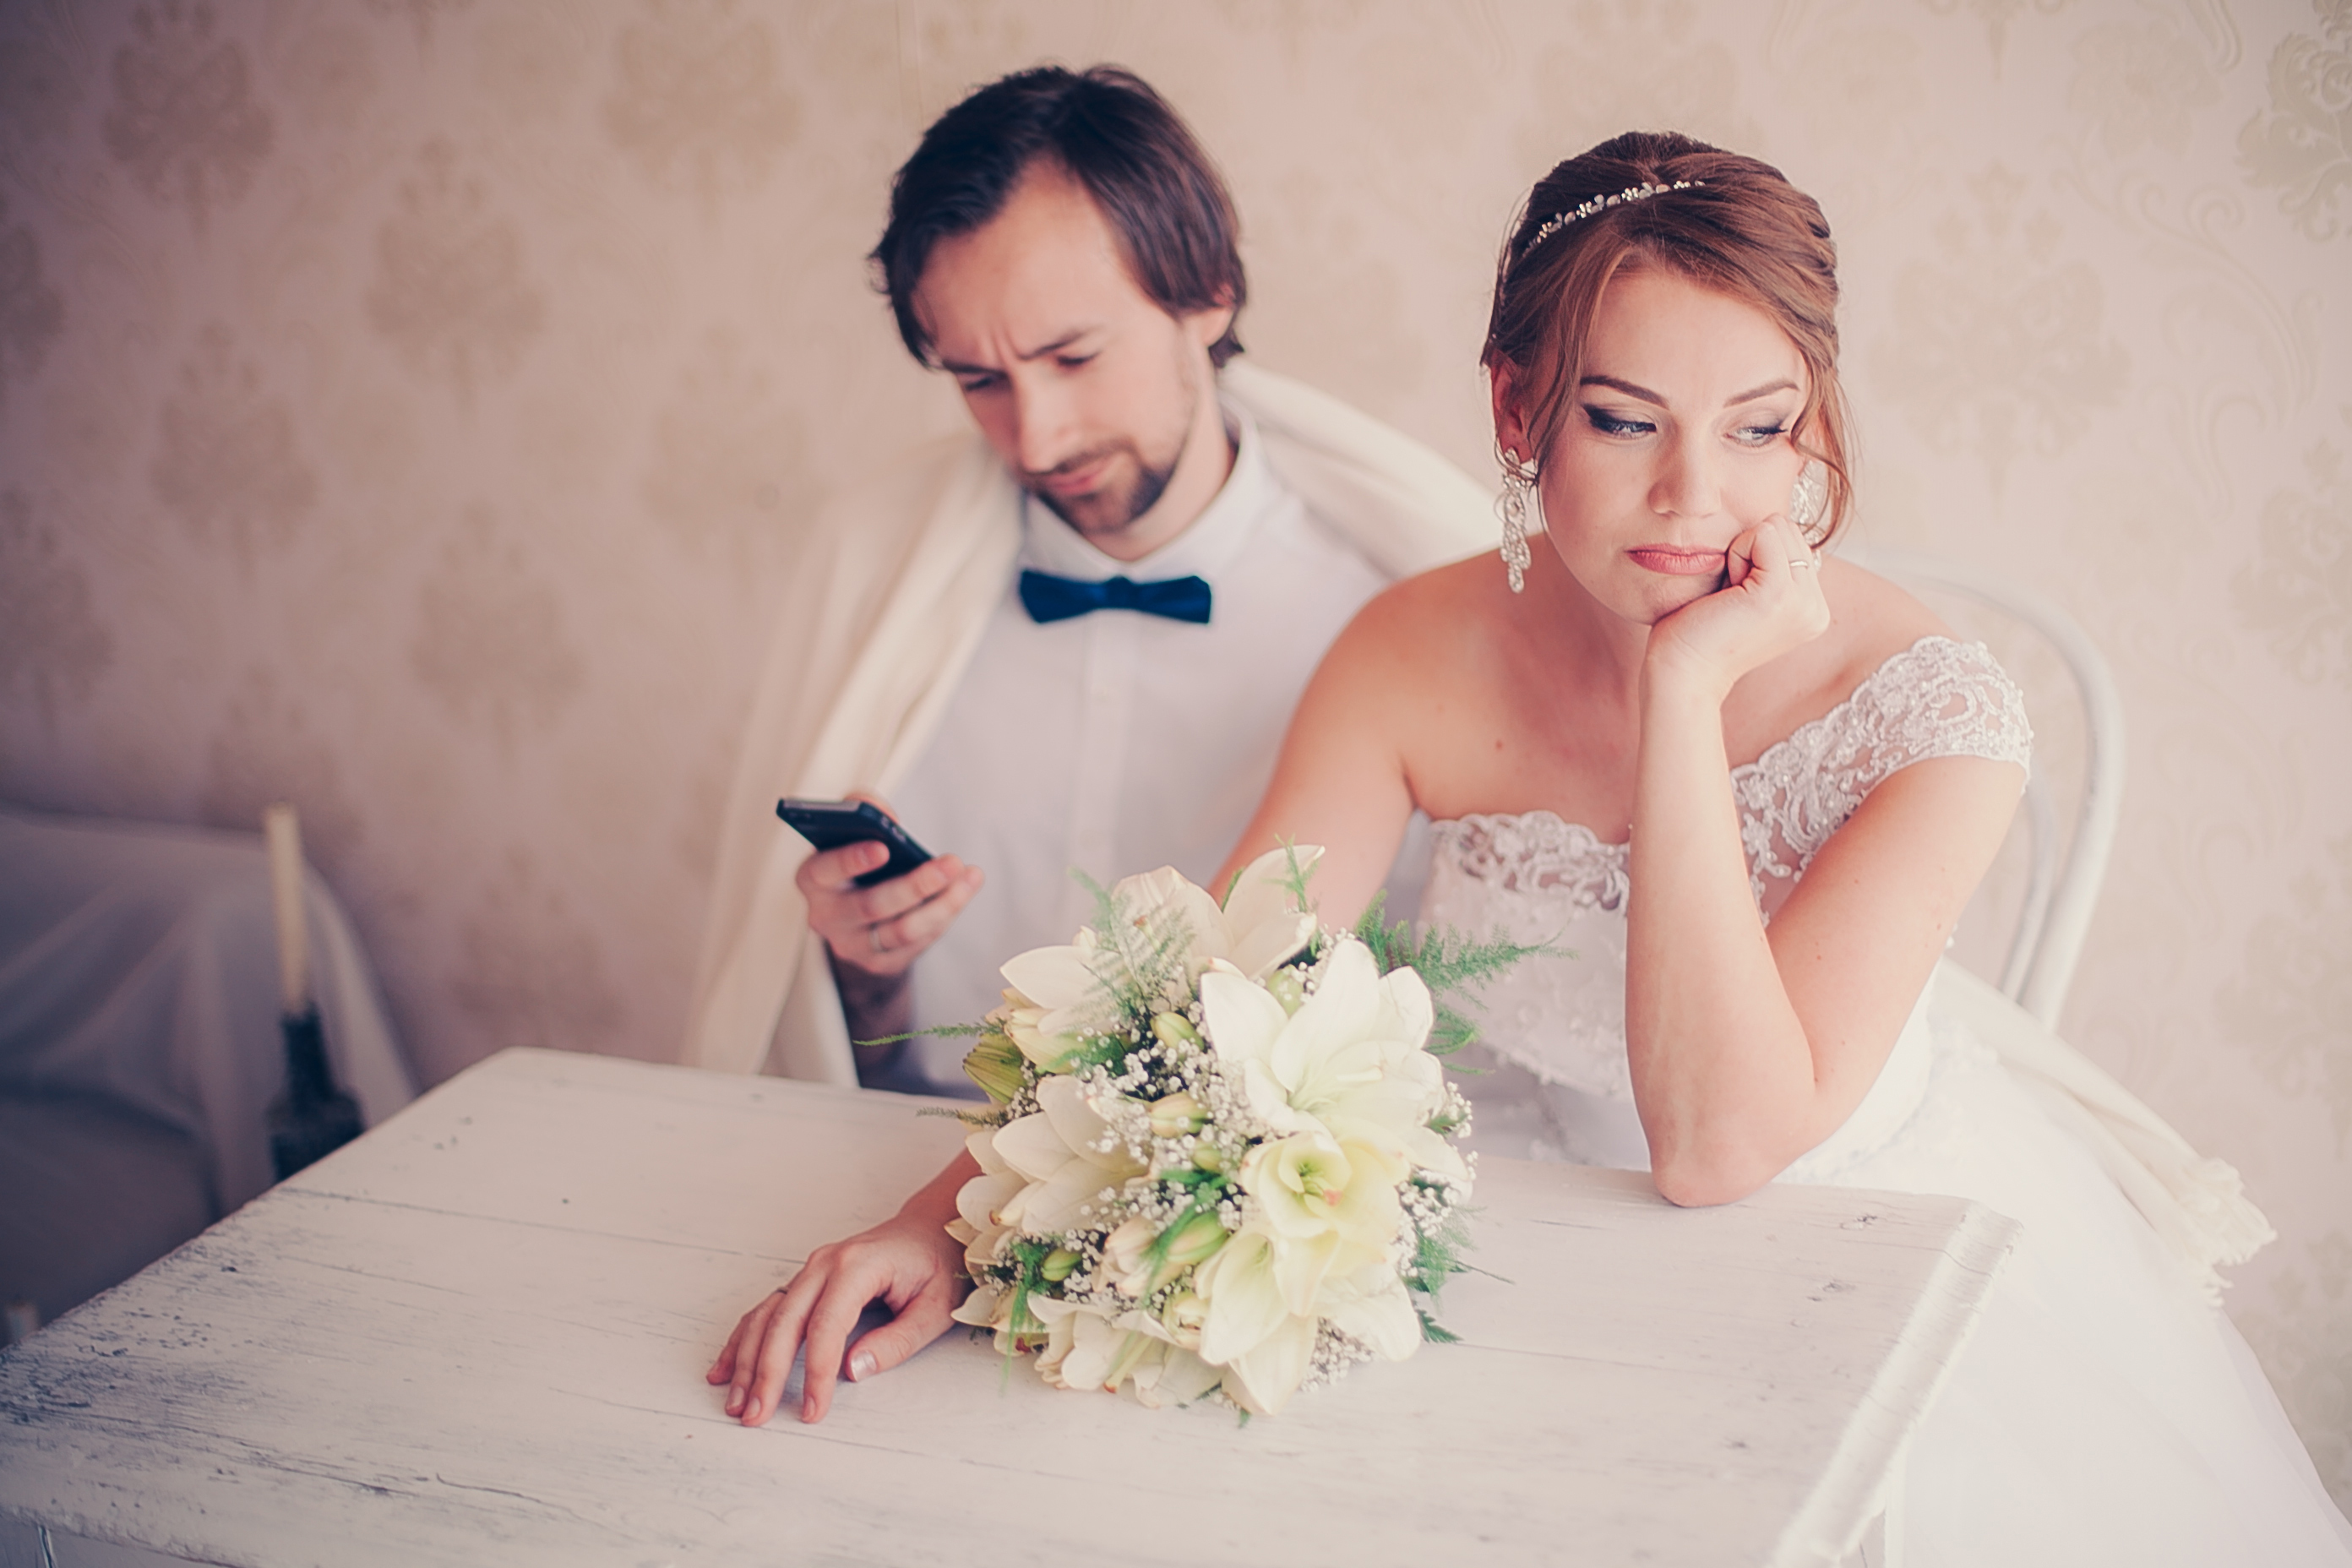 Upset bride and groom | Source: Shutterstock